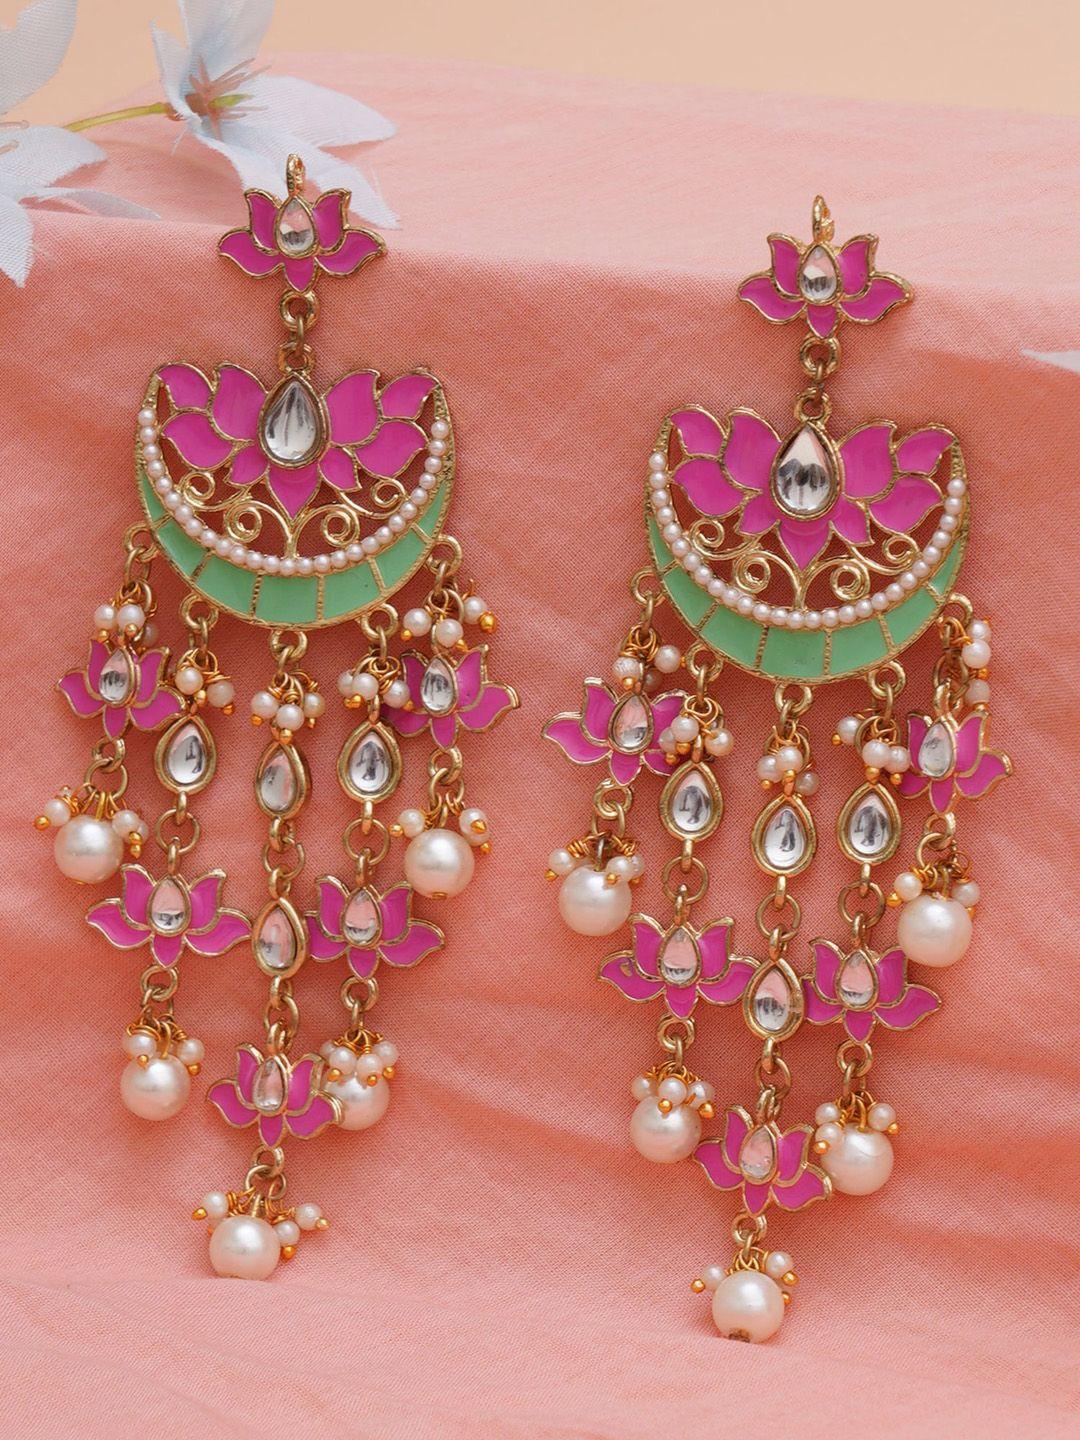 karatcart women pink & gold-toned classic chandbalis earrings